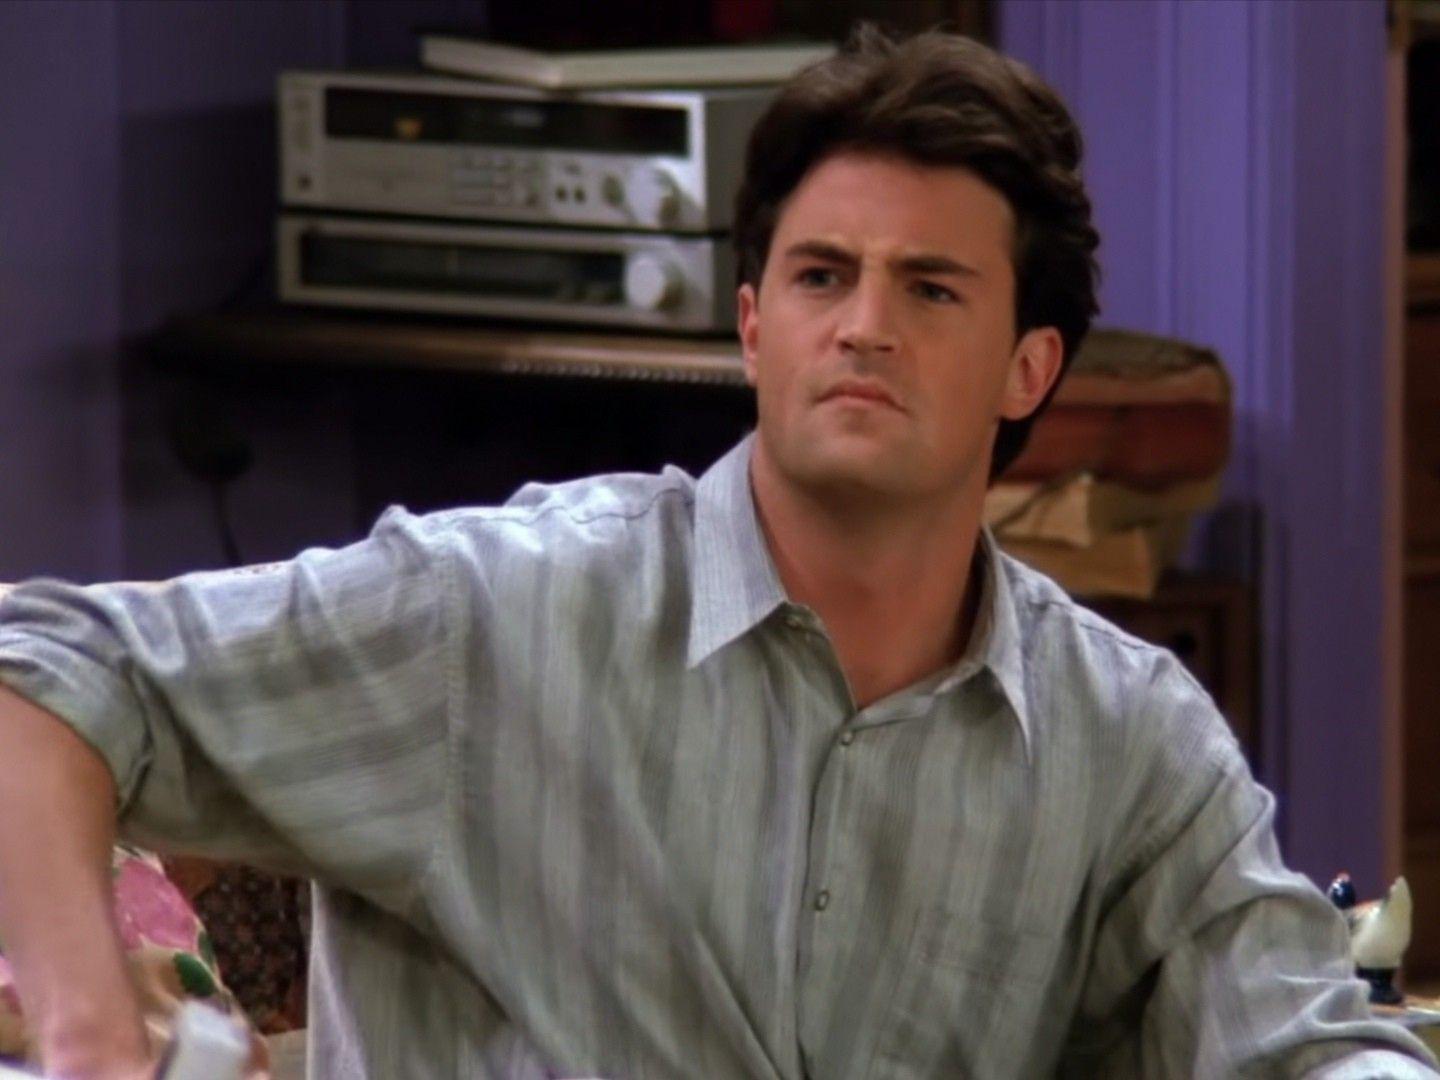 Prva epizoda kultne serije "Prijatelji" koja ga je i proslavila emitirala se 22. rujna 1994., a njegova uloga Chandlera Binga jedna je od najpamtljivijih uloga na malim ekranima. 